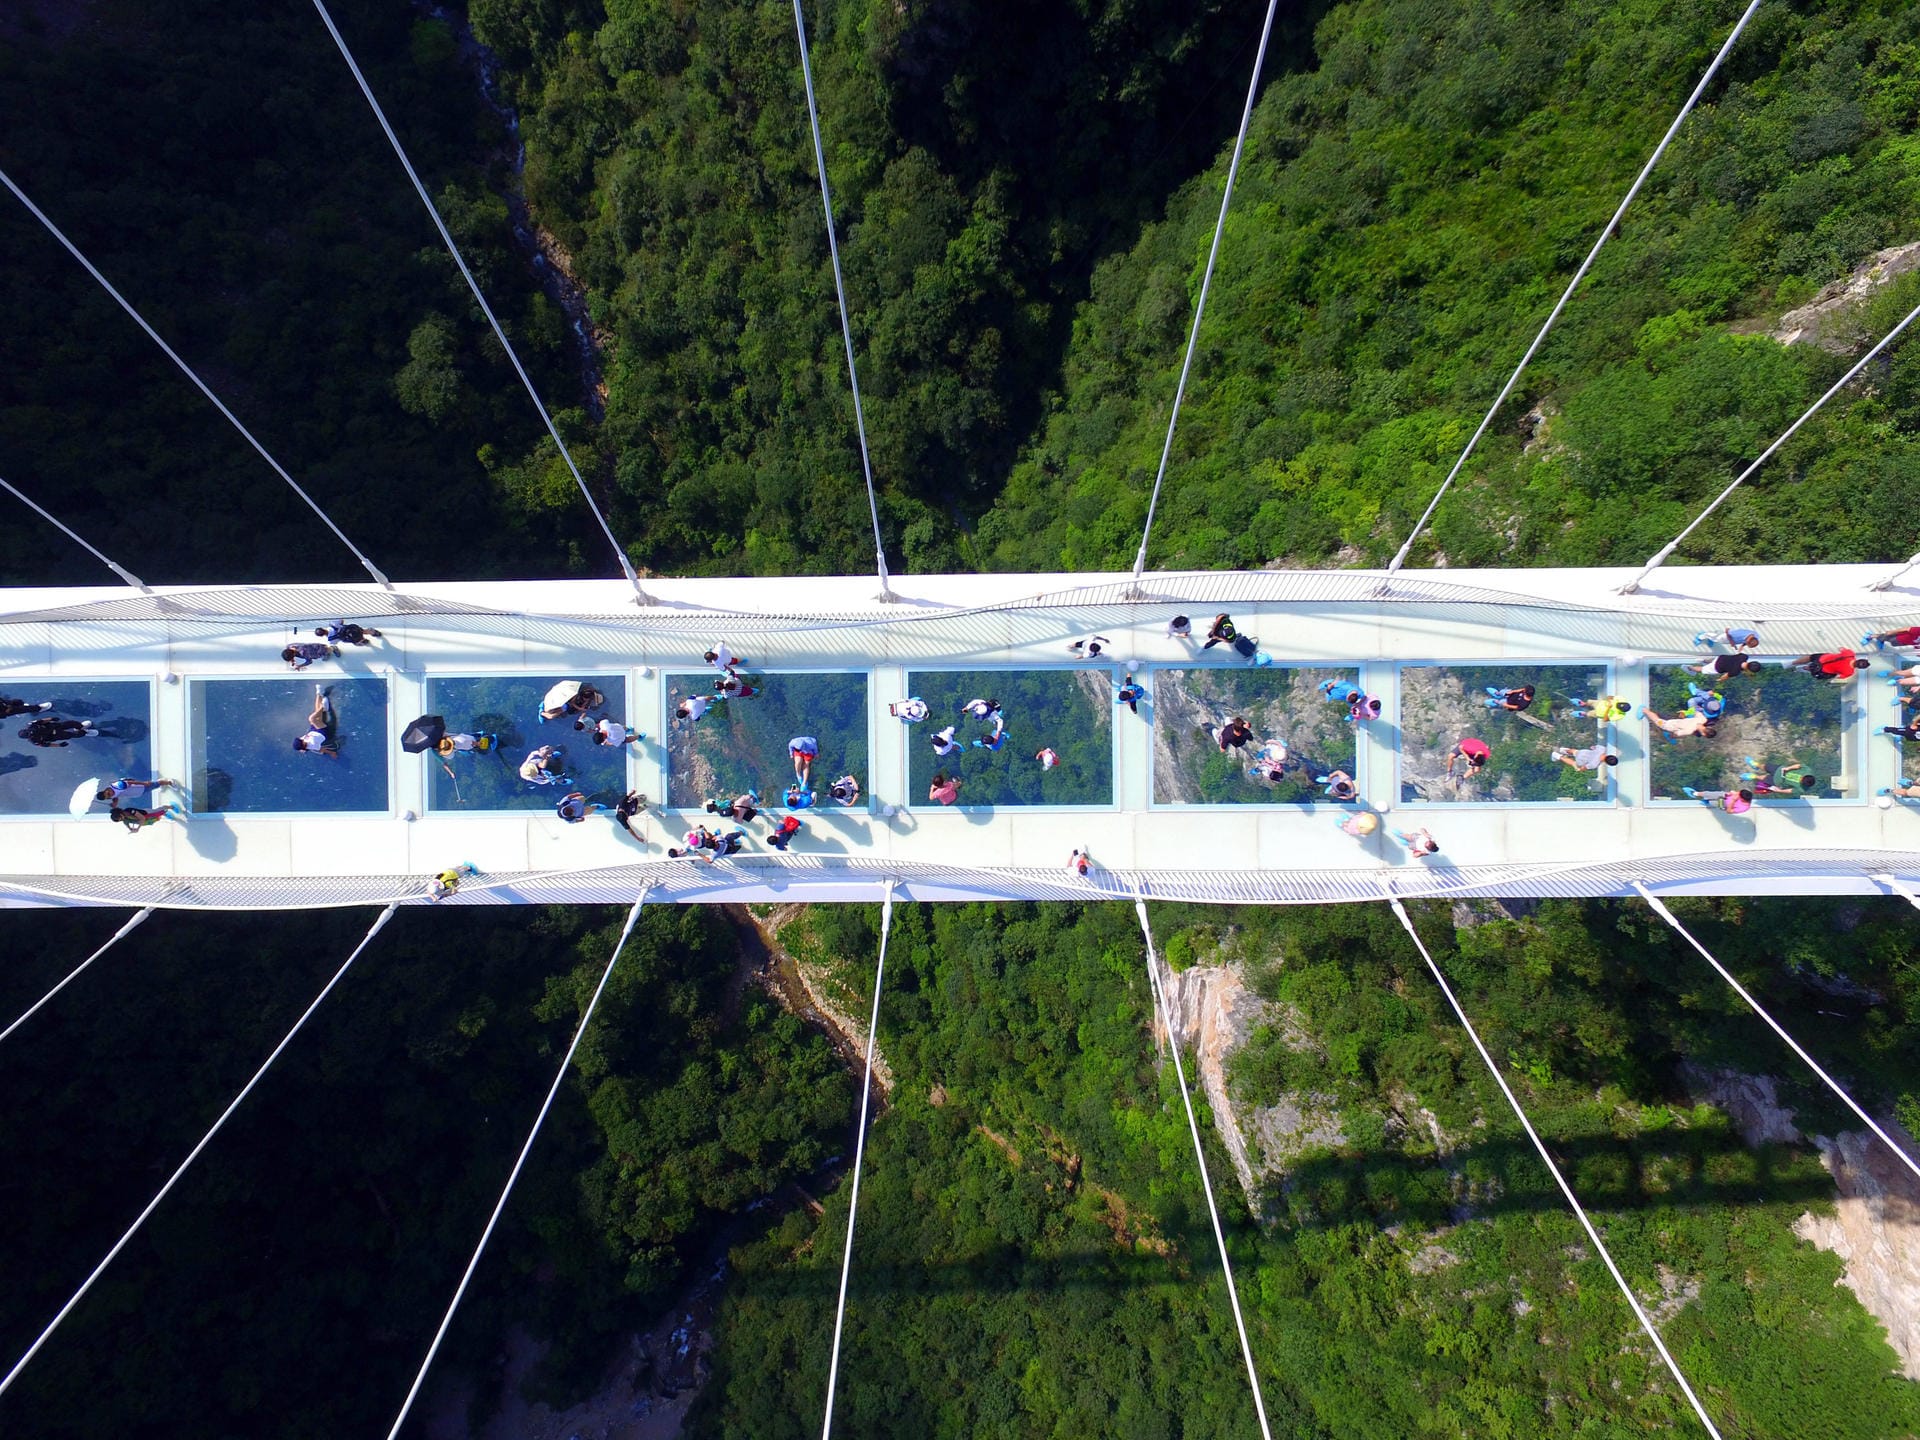 Am 20. August 2016 eröffnete die "Zhangjiajie Grand Canyon Glass Bridge" im gleichnamigen Nationalpark für Besucher.